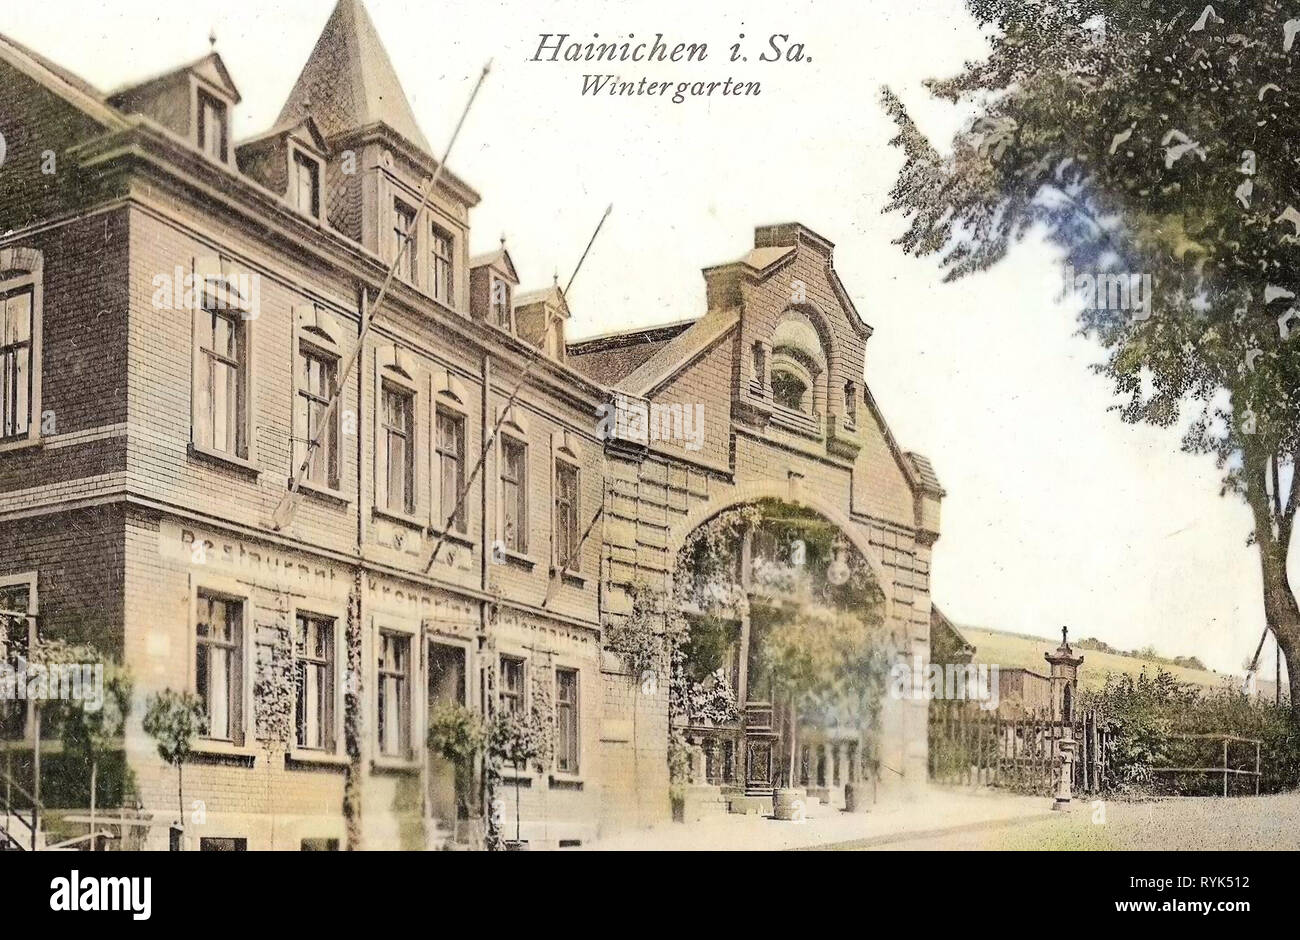 Restaurants in Landkreis Mittelsachsen, Winter gardens, Buildings in Hainichen, 1915, Landkreis Mittelsachsen, Hainichen, Restaurant Wintergarten, Germany Stock Photo